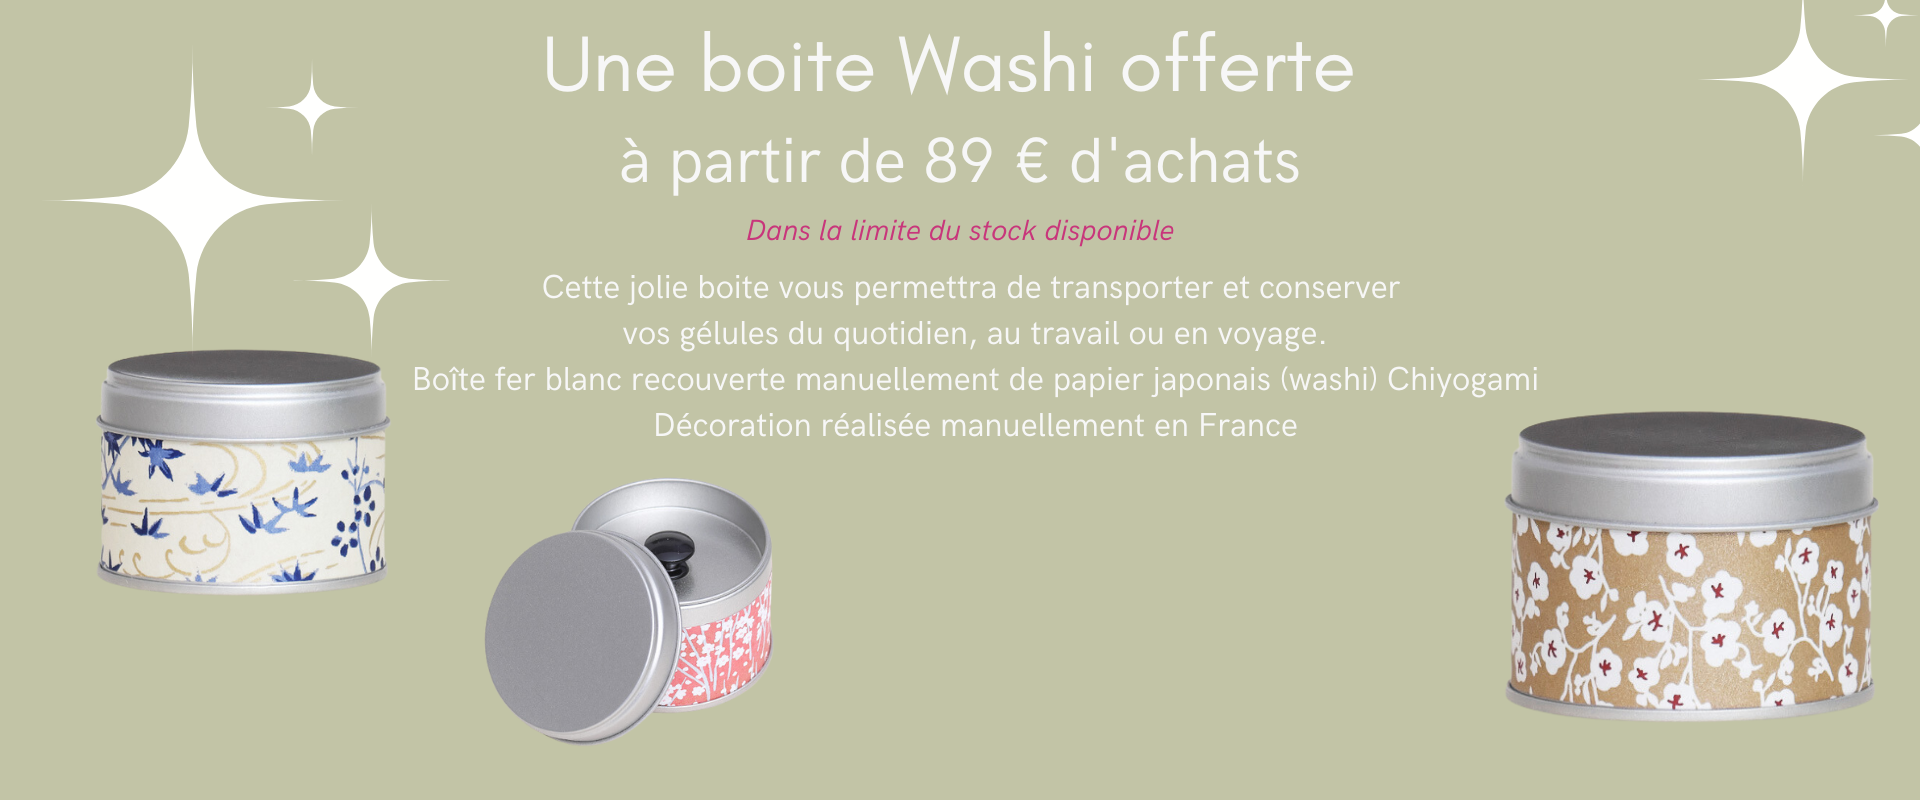 Petite boite washi